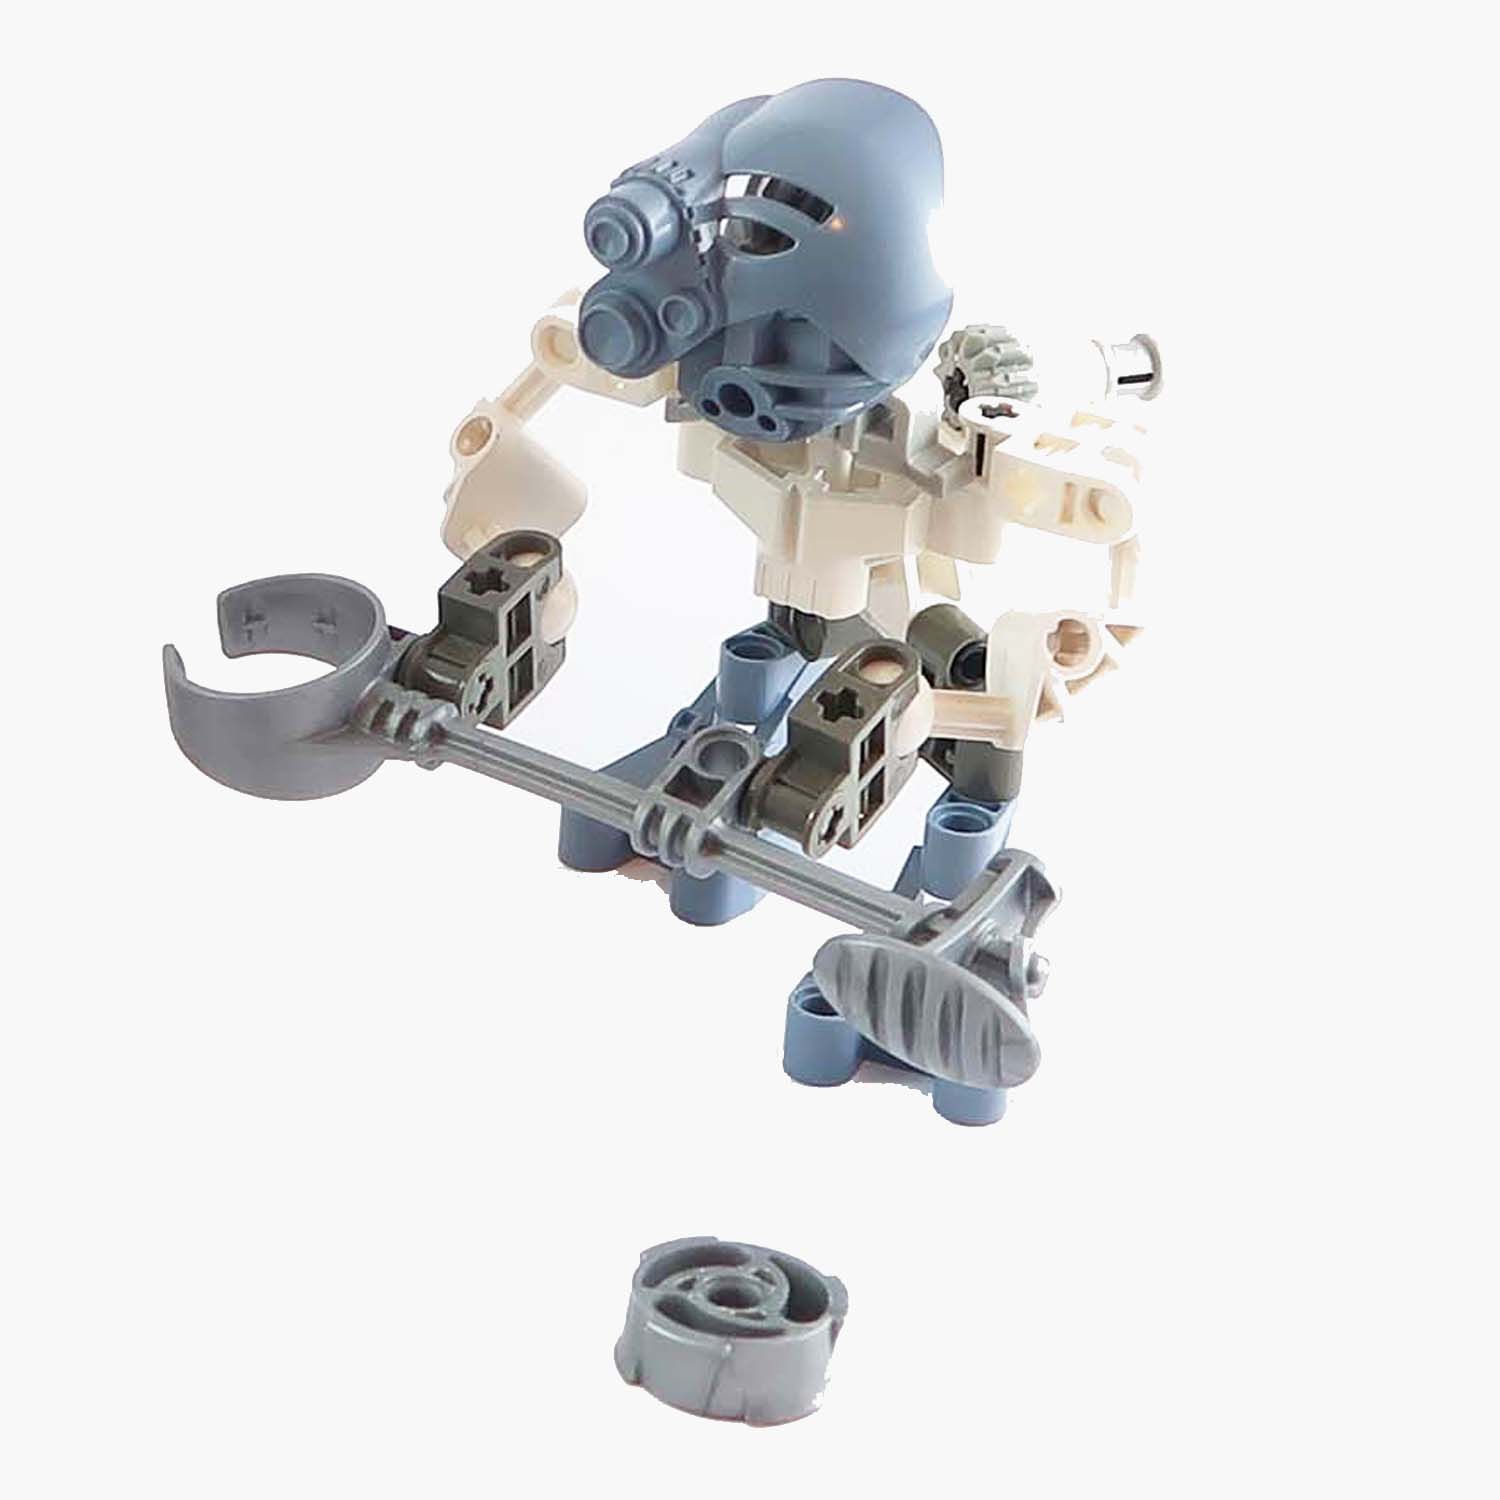 LEGO Bionicle - Matoran Matoro (8582)